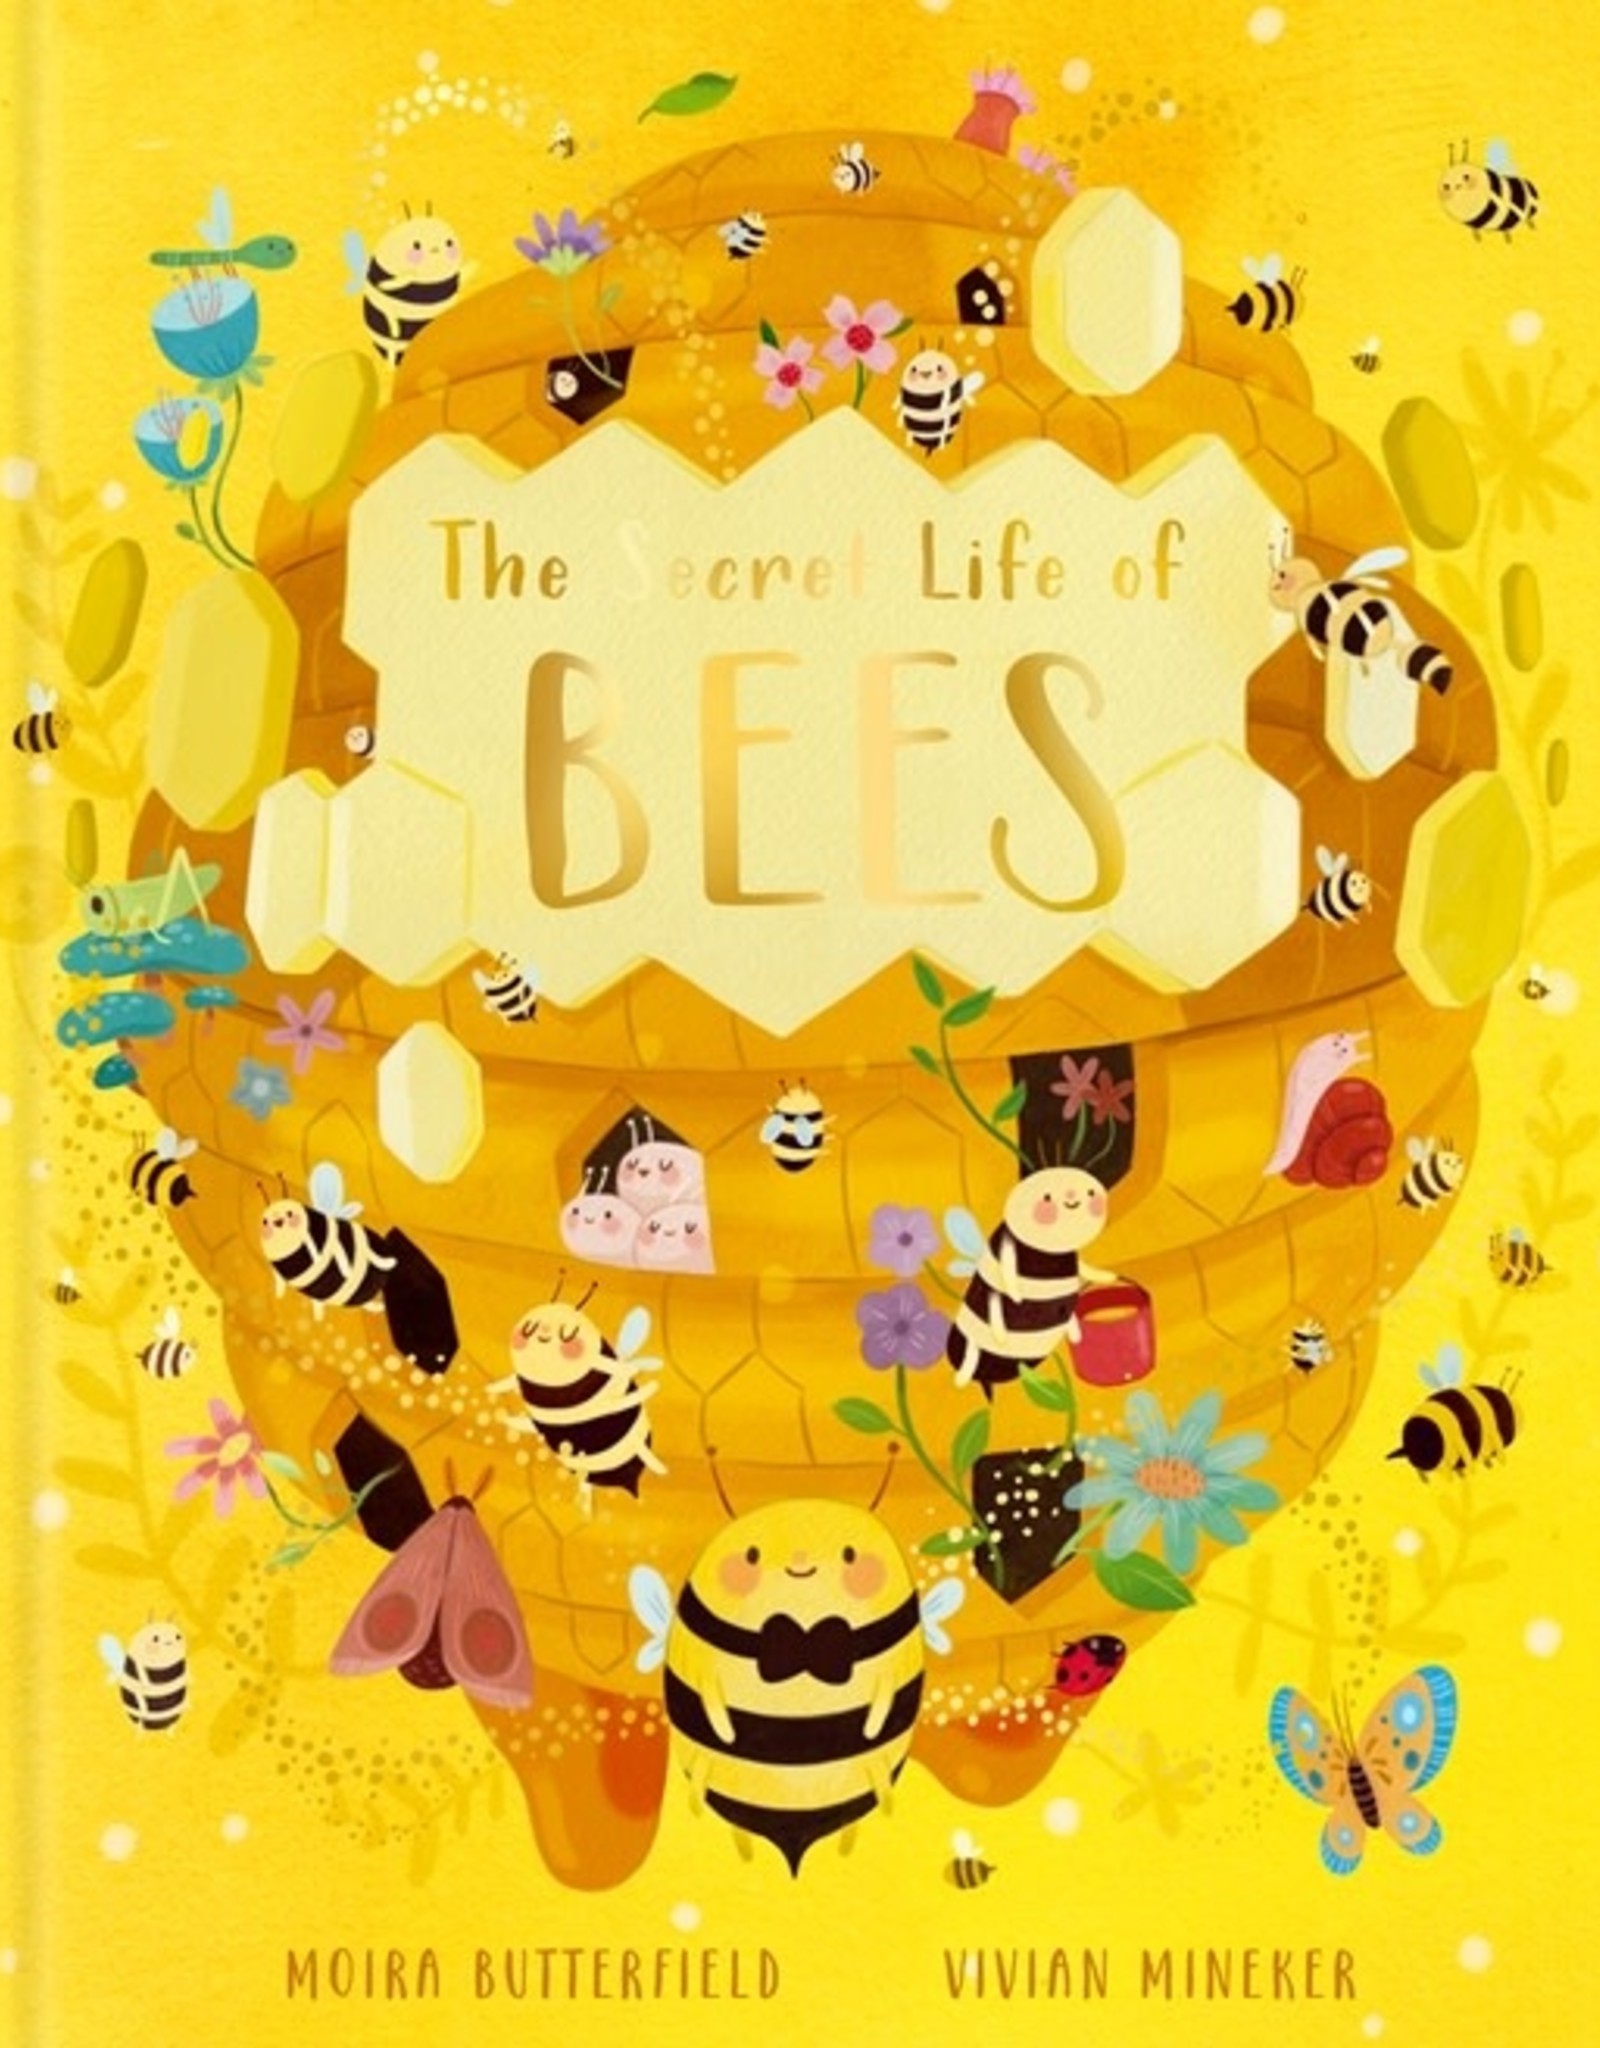 Quarto Secret Life of Bees